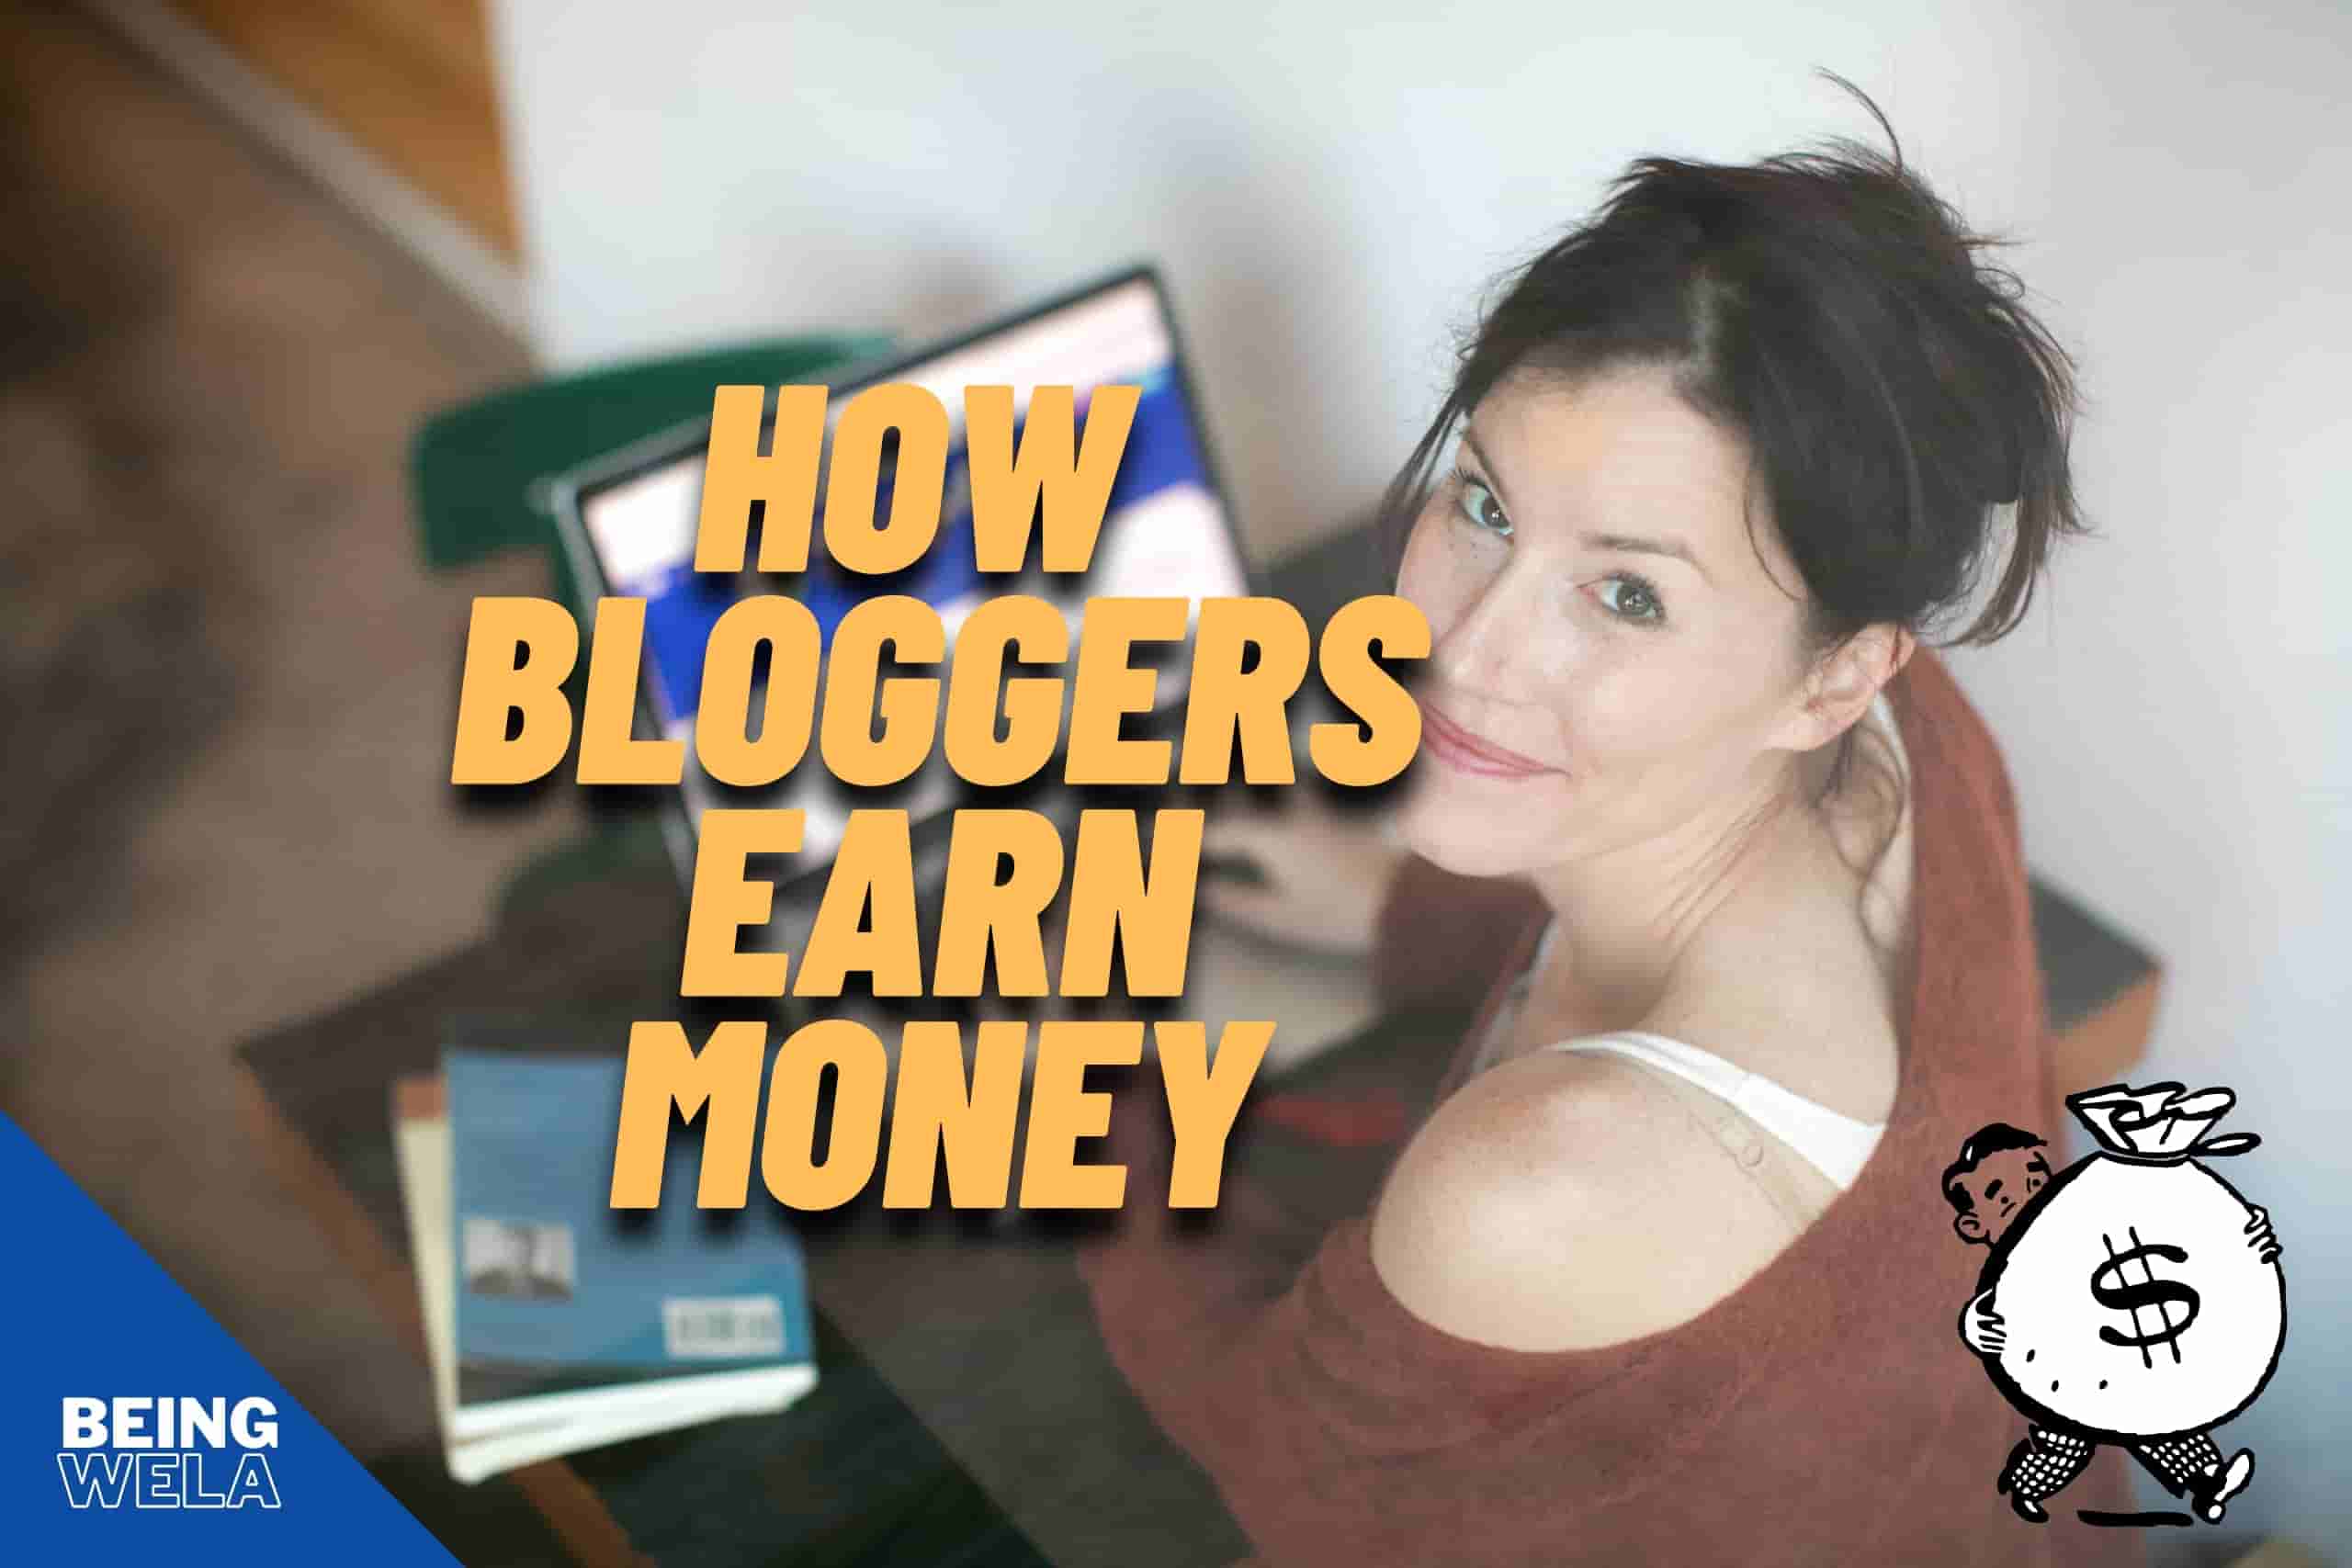 How bloggers Earn Money